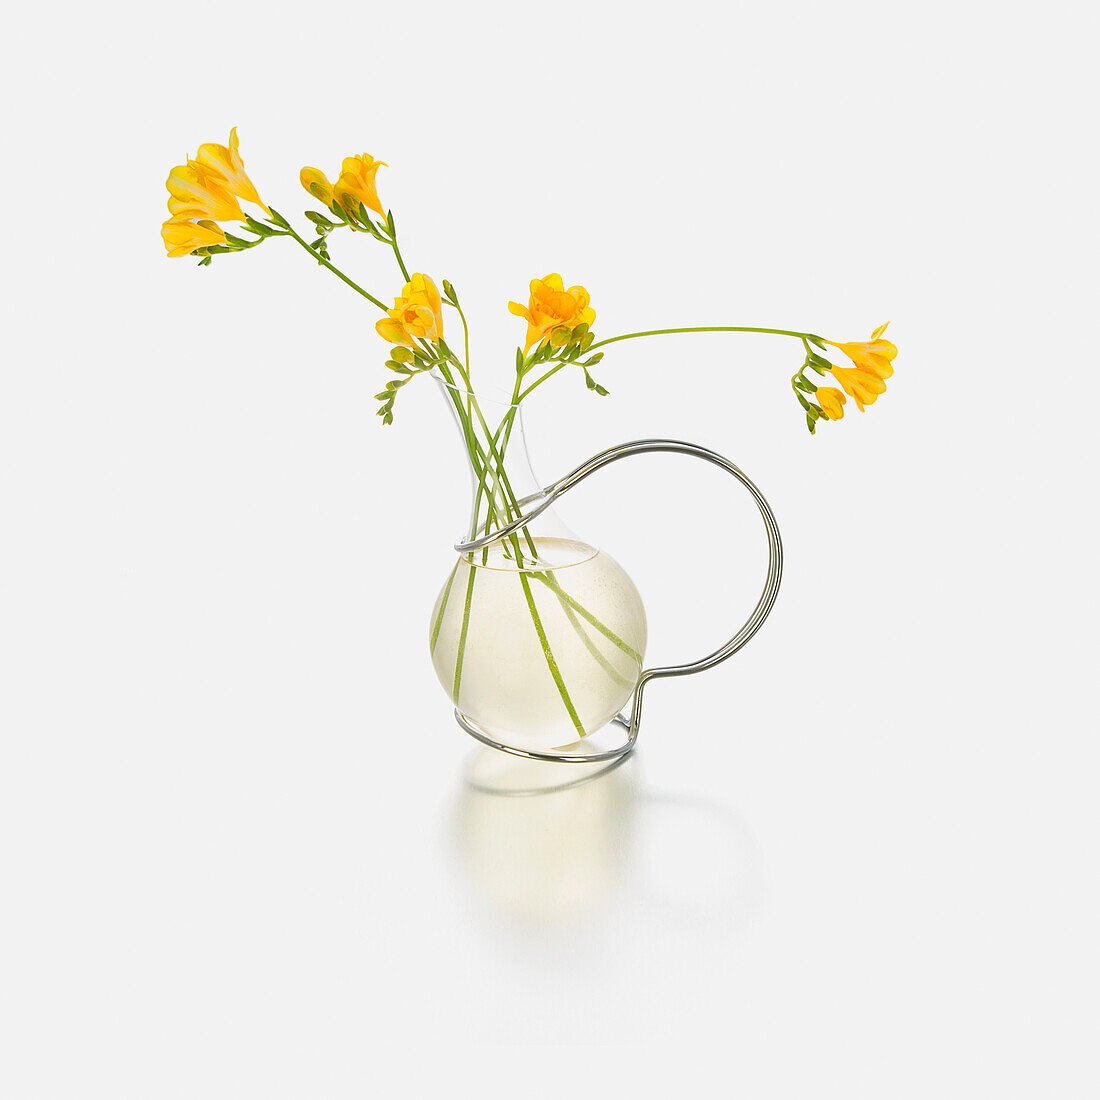 Gelbe Blumen in einer Glasvase vor weißem Hintergrund